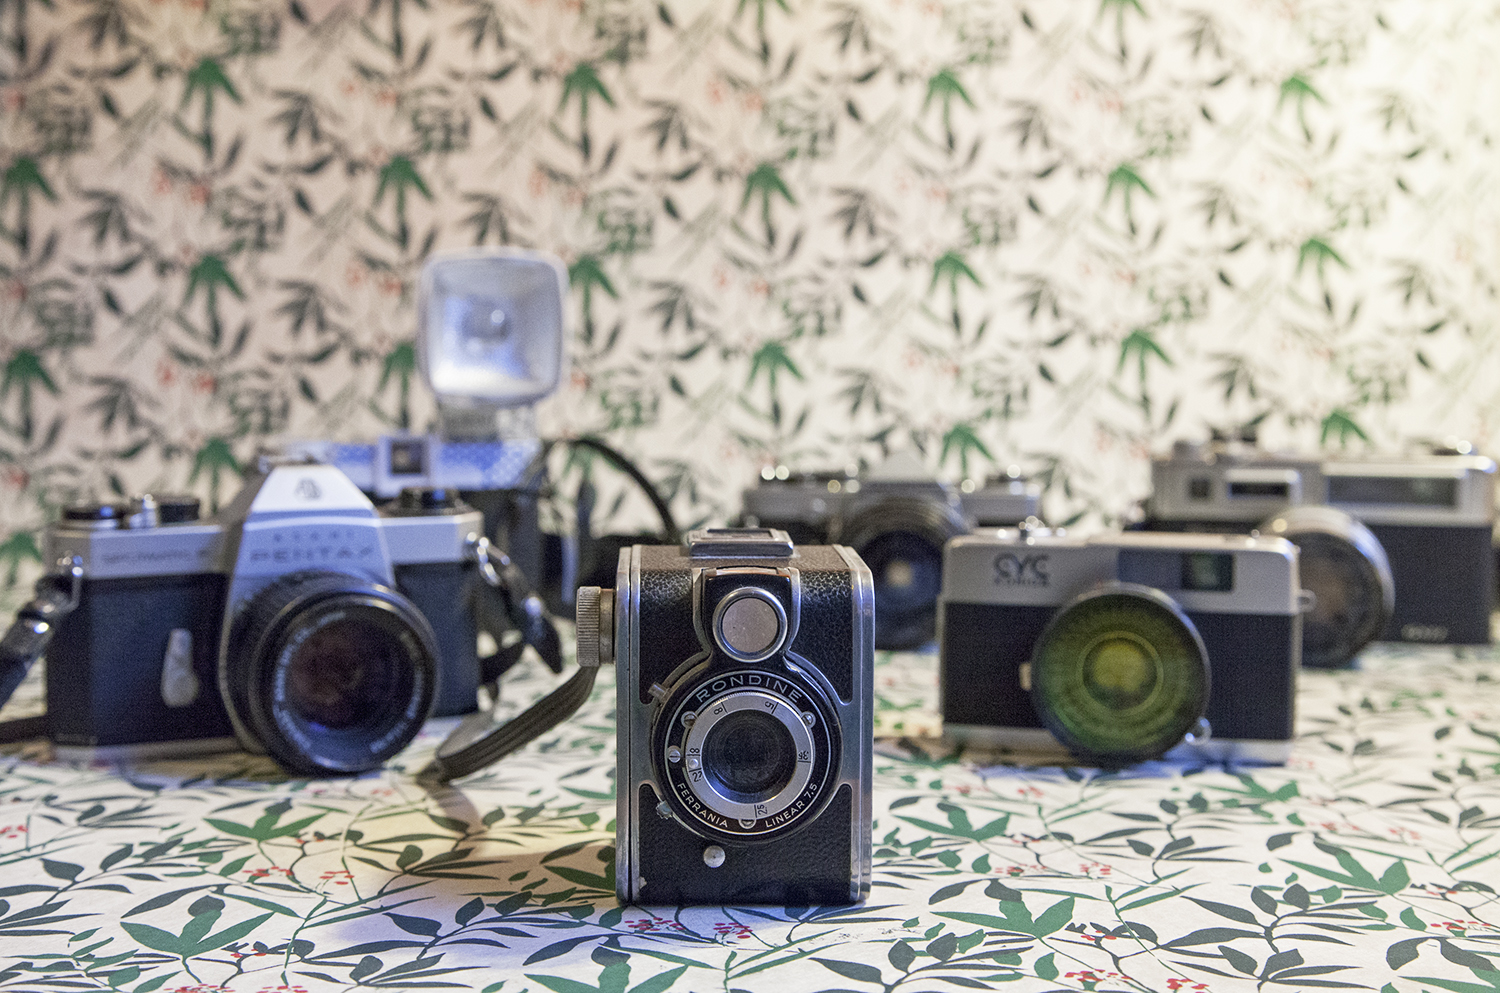 frames of berlin 17, macchine fotografiche, analogico, canon 5D